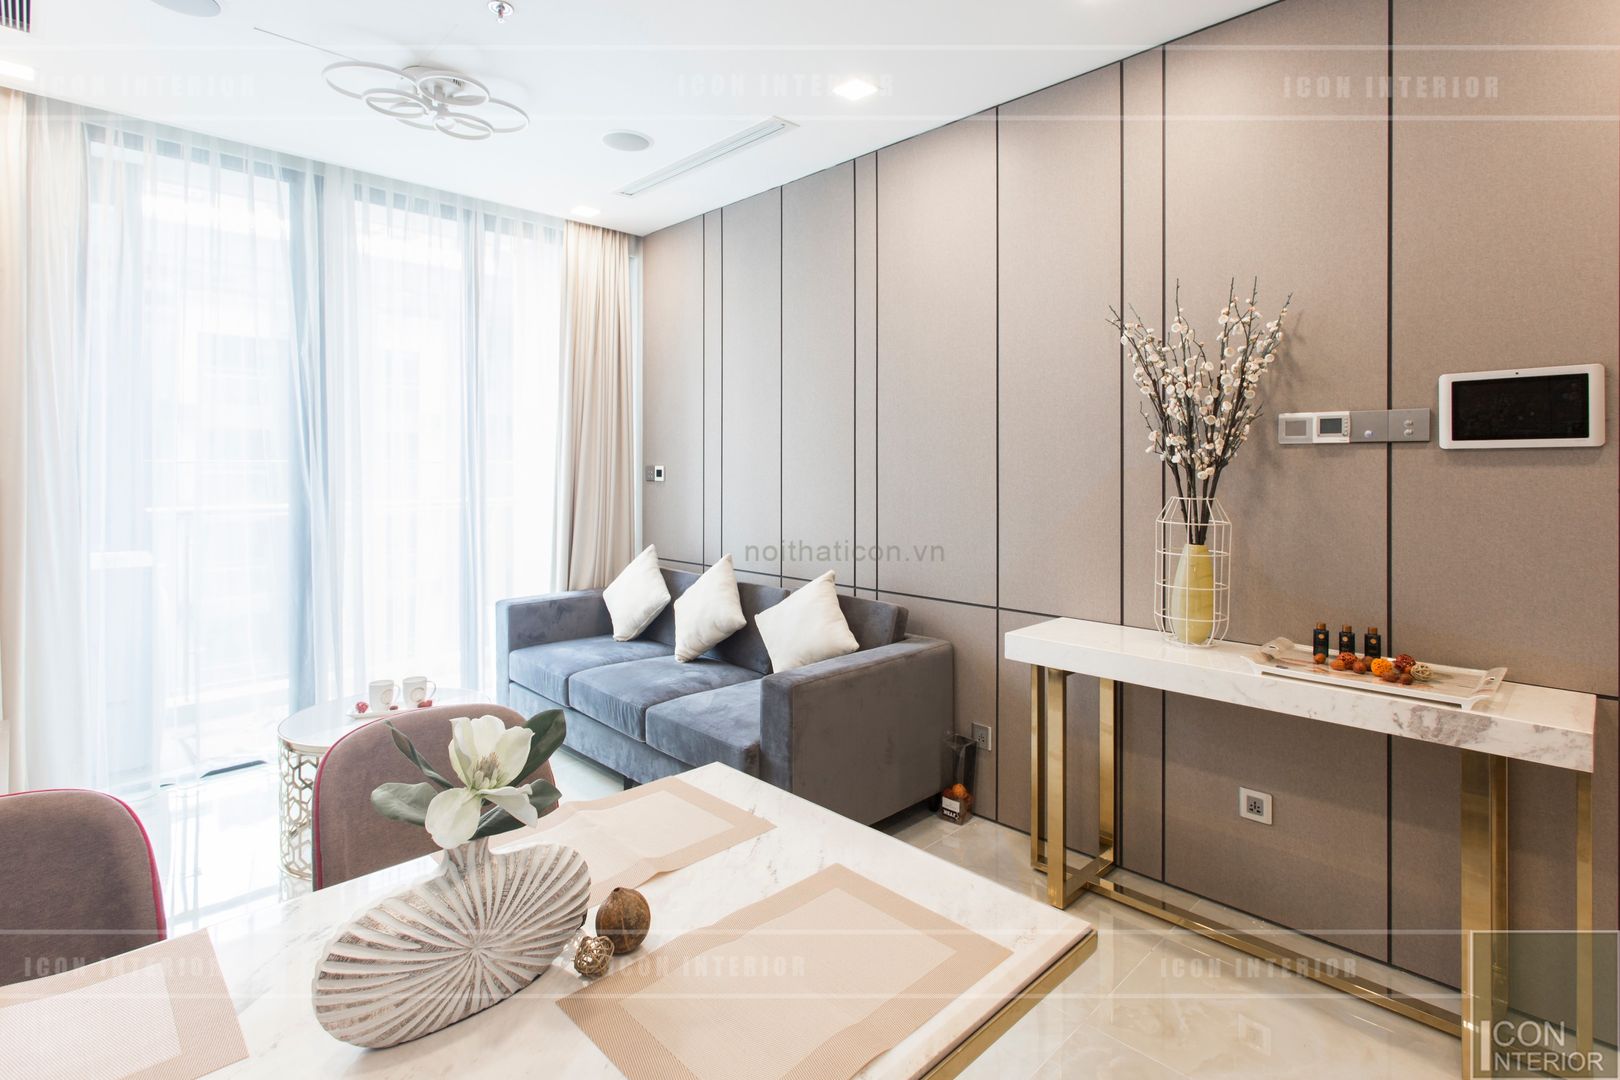 Thi công nội thất căn hộ Aqua 1 Vinhomes Golden River - Phong cách hiện đại, ICON INTERIOR ICON INTERIOR Phòng khách